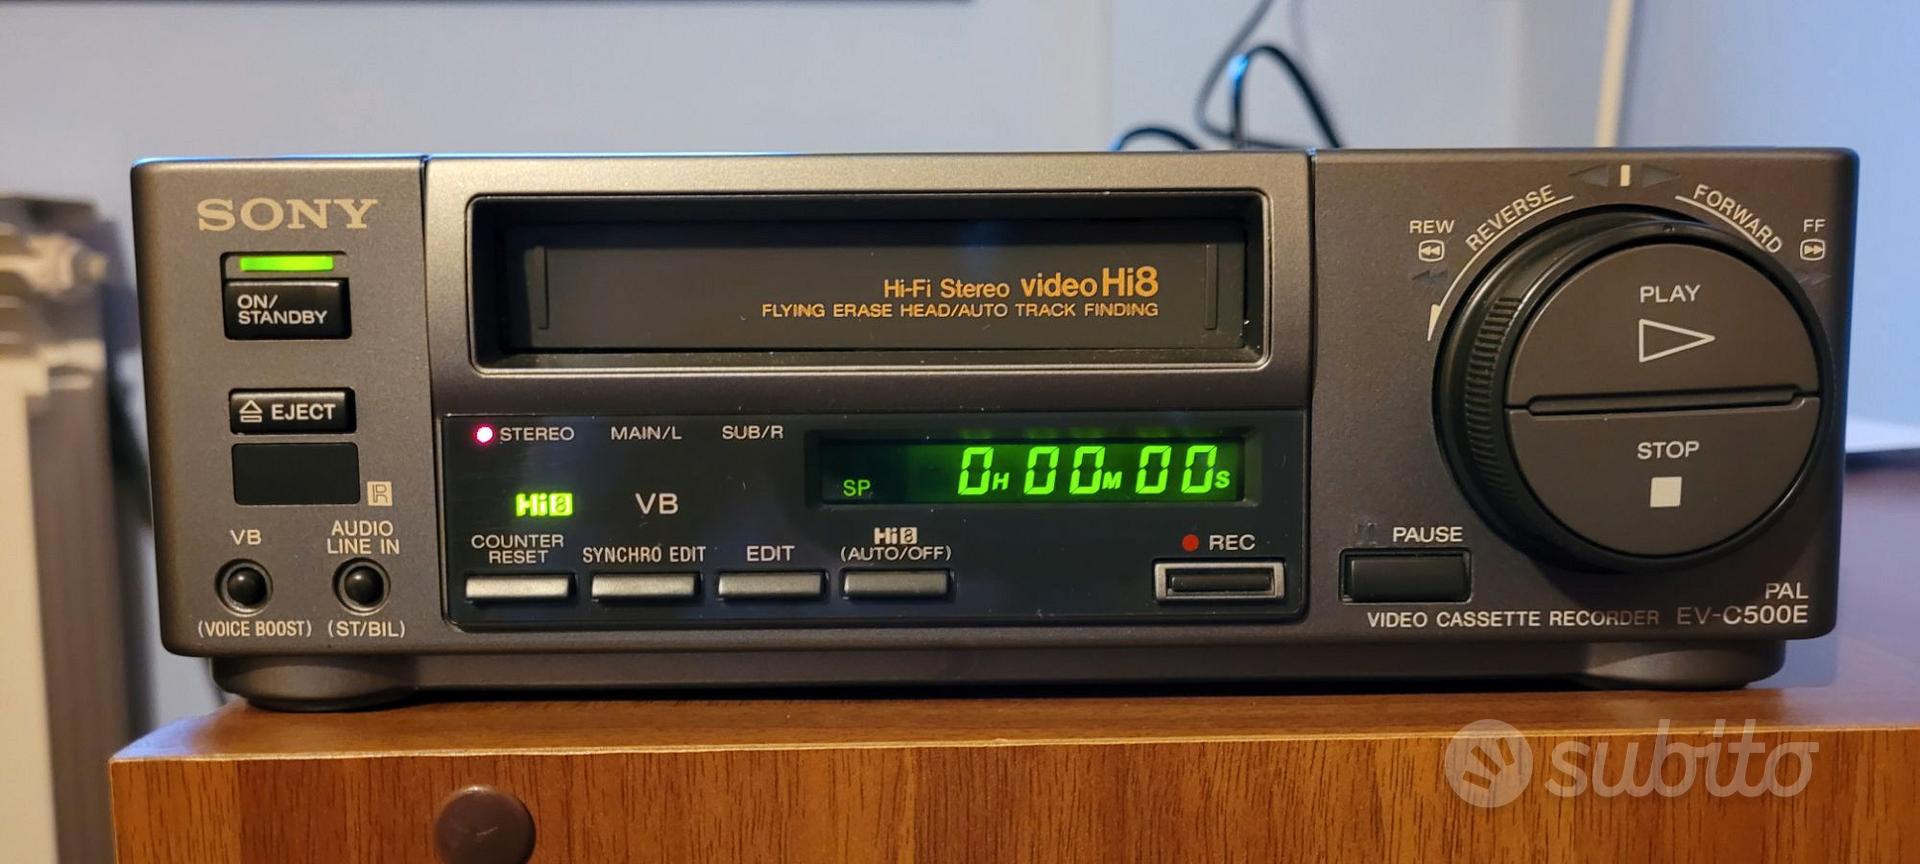 MAGNÉTOSCOPE HI8 SONY EV-C500E Hifi Stéréo Pal Vidéo Cassette Recorder EUR  375,00 - PicClick FR